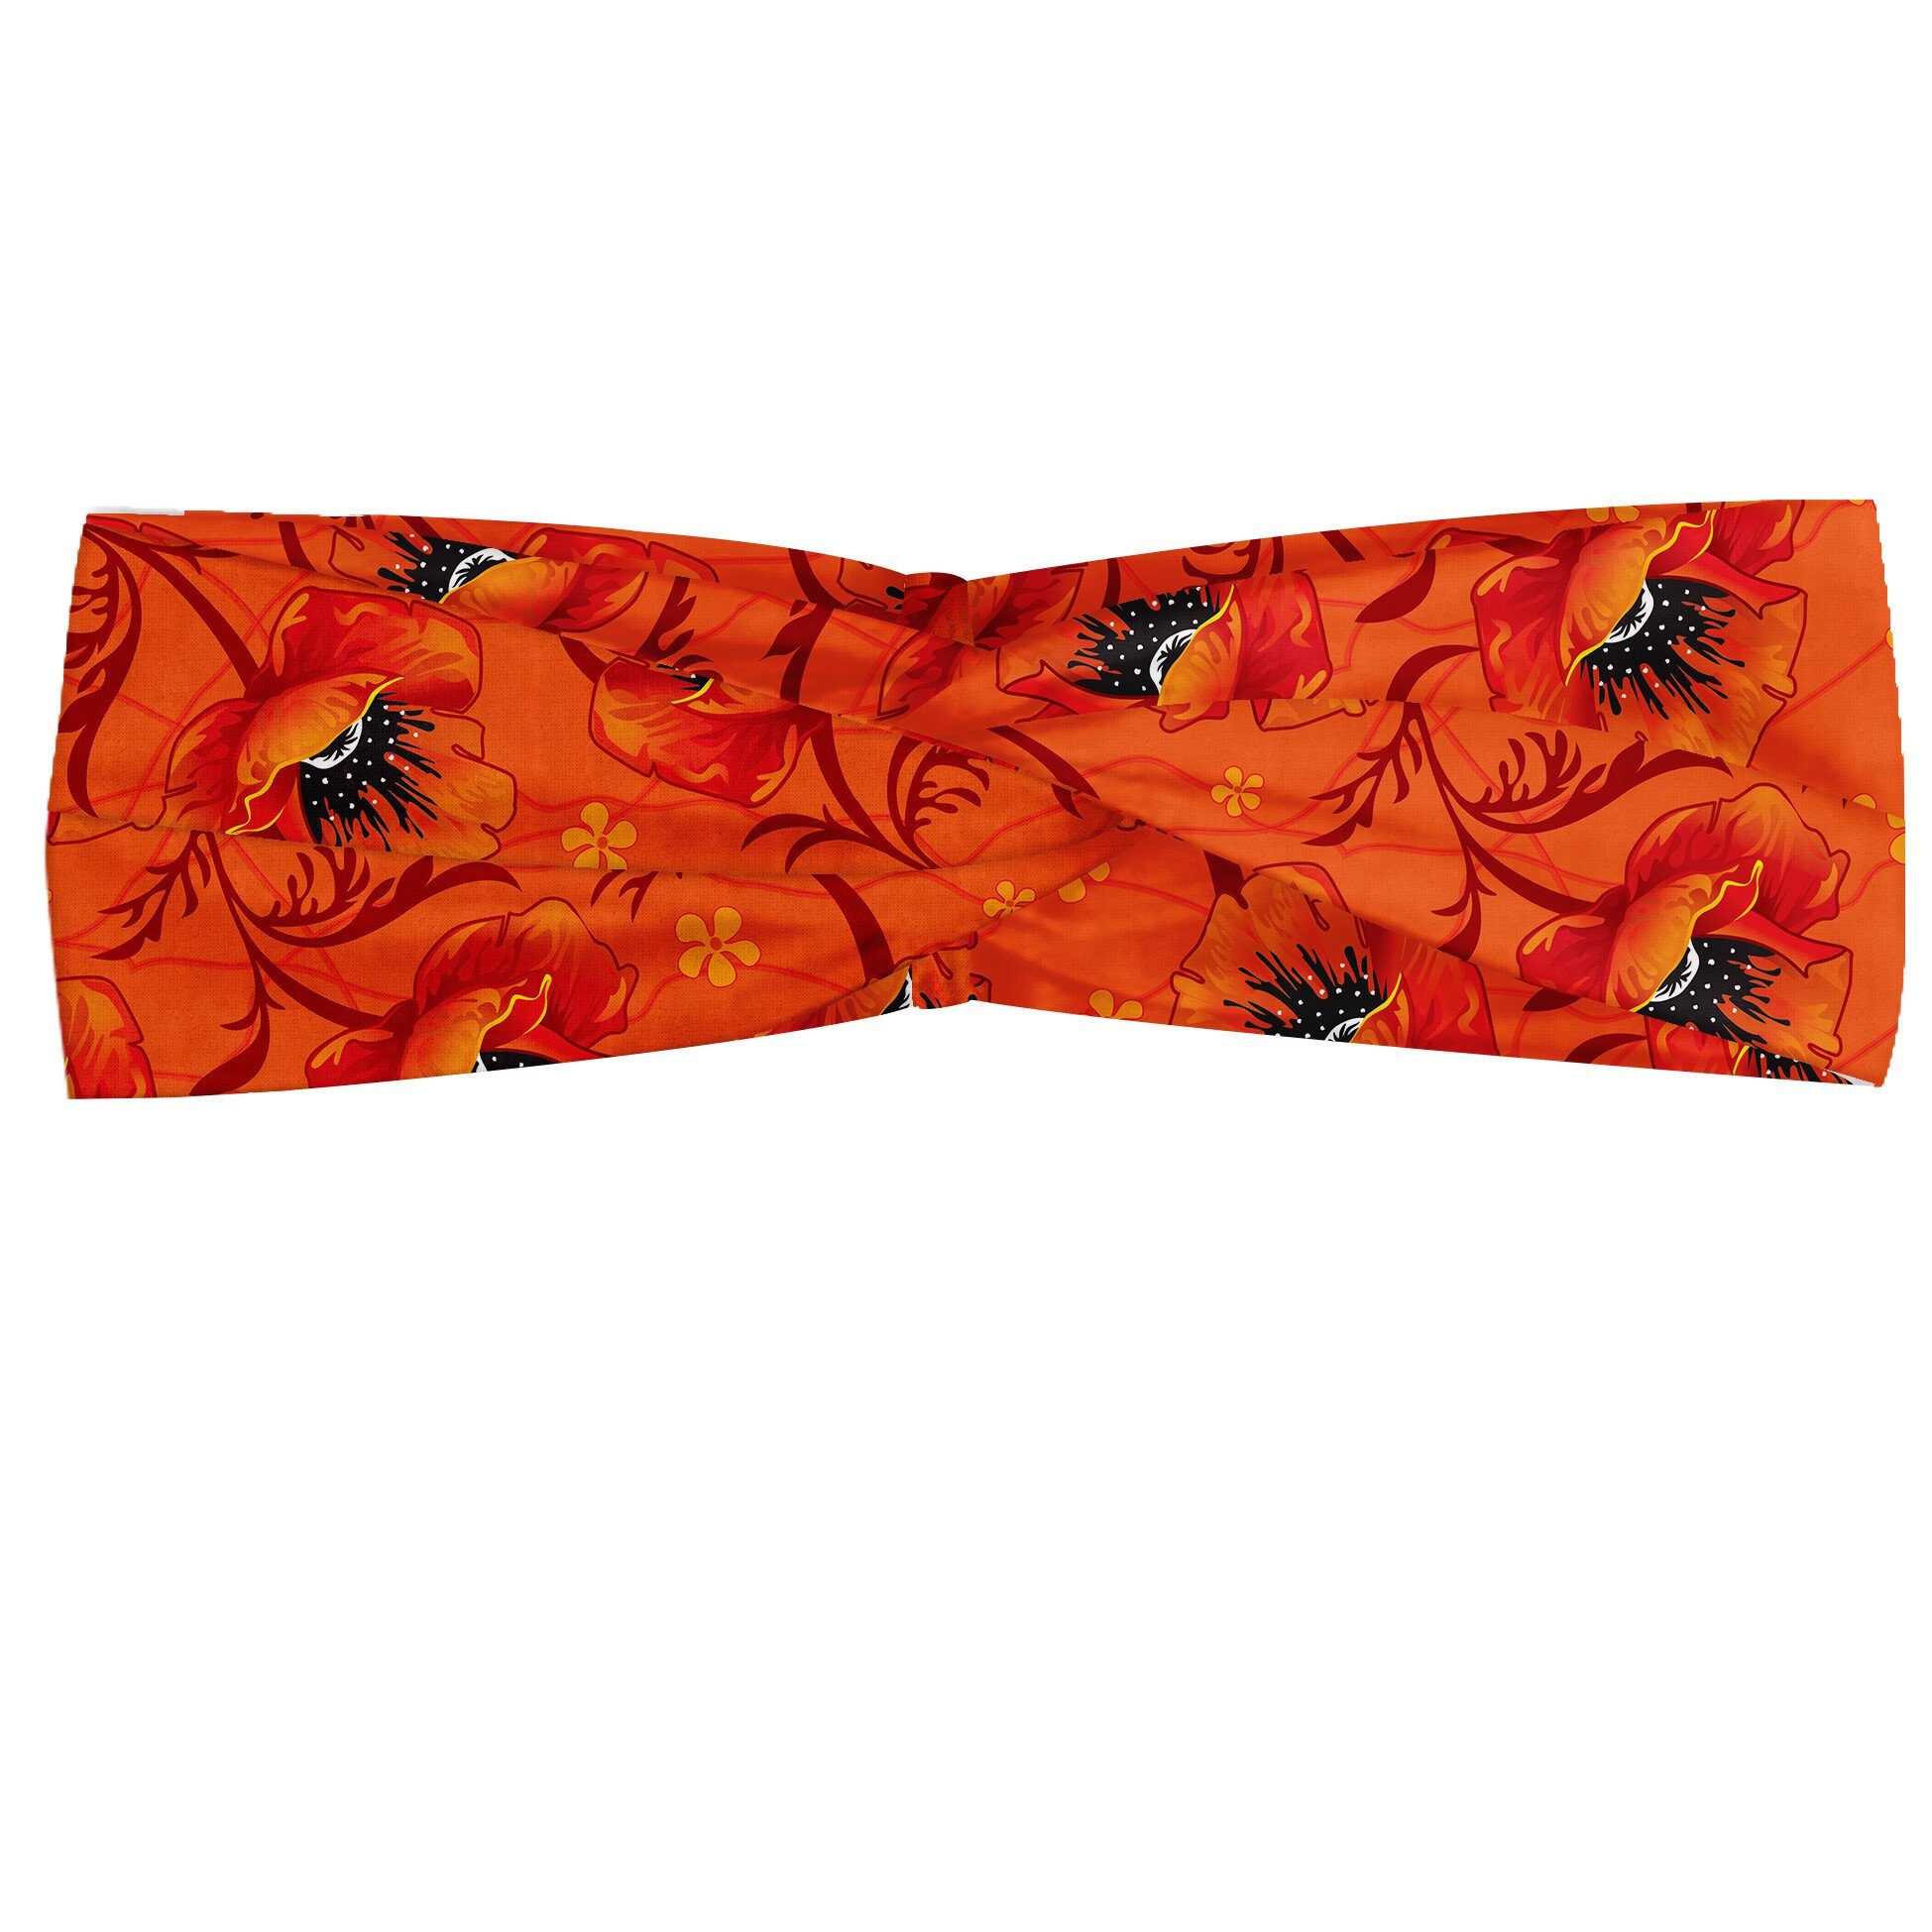 Abakuhaus Stirnband Elastisch und Angenehme alltags accessories Orange Mohnblumen-Blumen Romantik